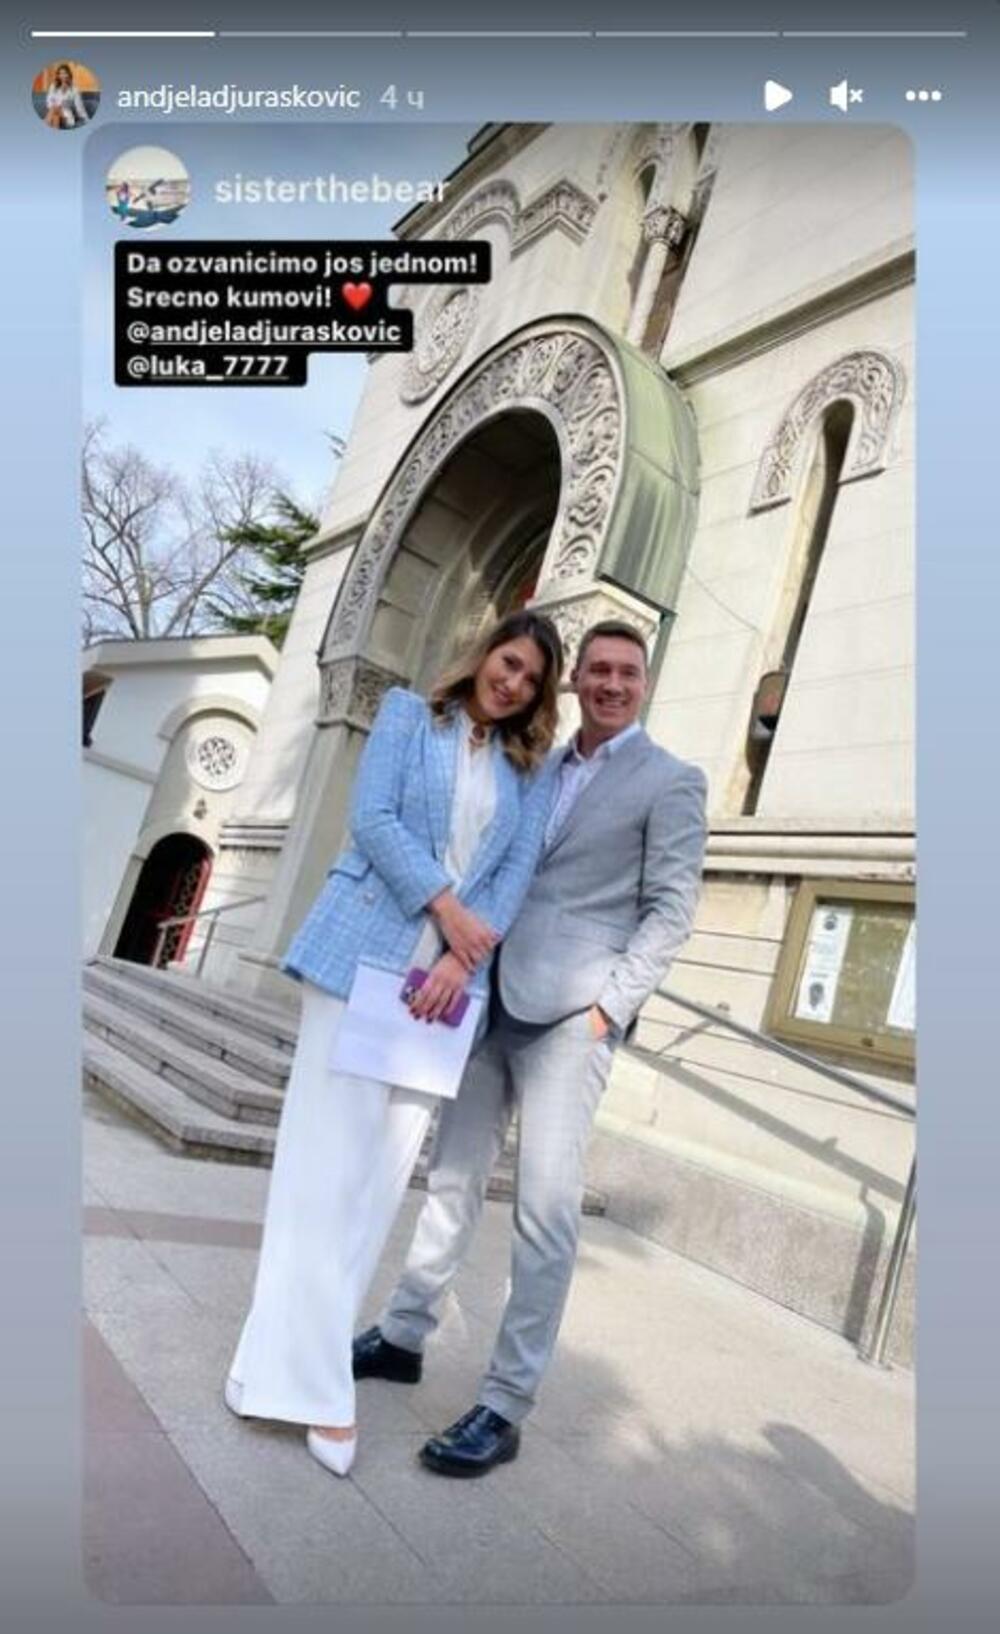 <p>Nakon što su u septembru napravili slavlje povodom venčanja, voditeljka Anđela Đurašković i njen partner zakleli su se na večnu ljubav i u crkvi!</p>